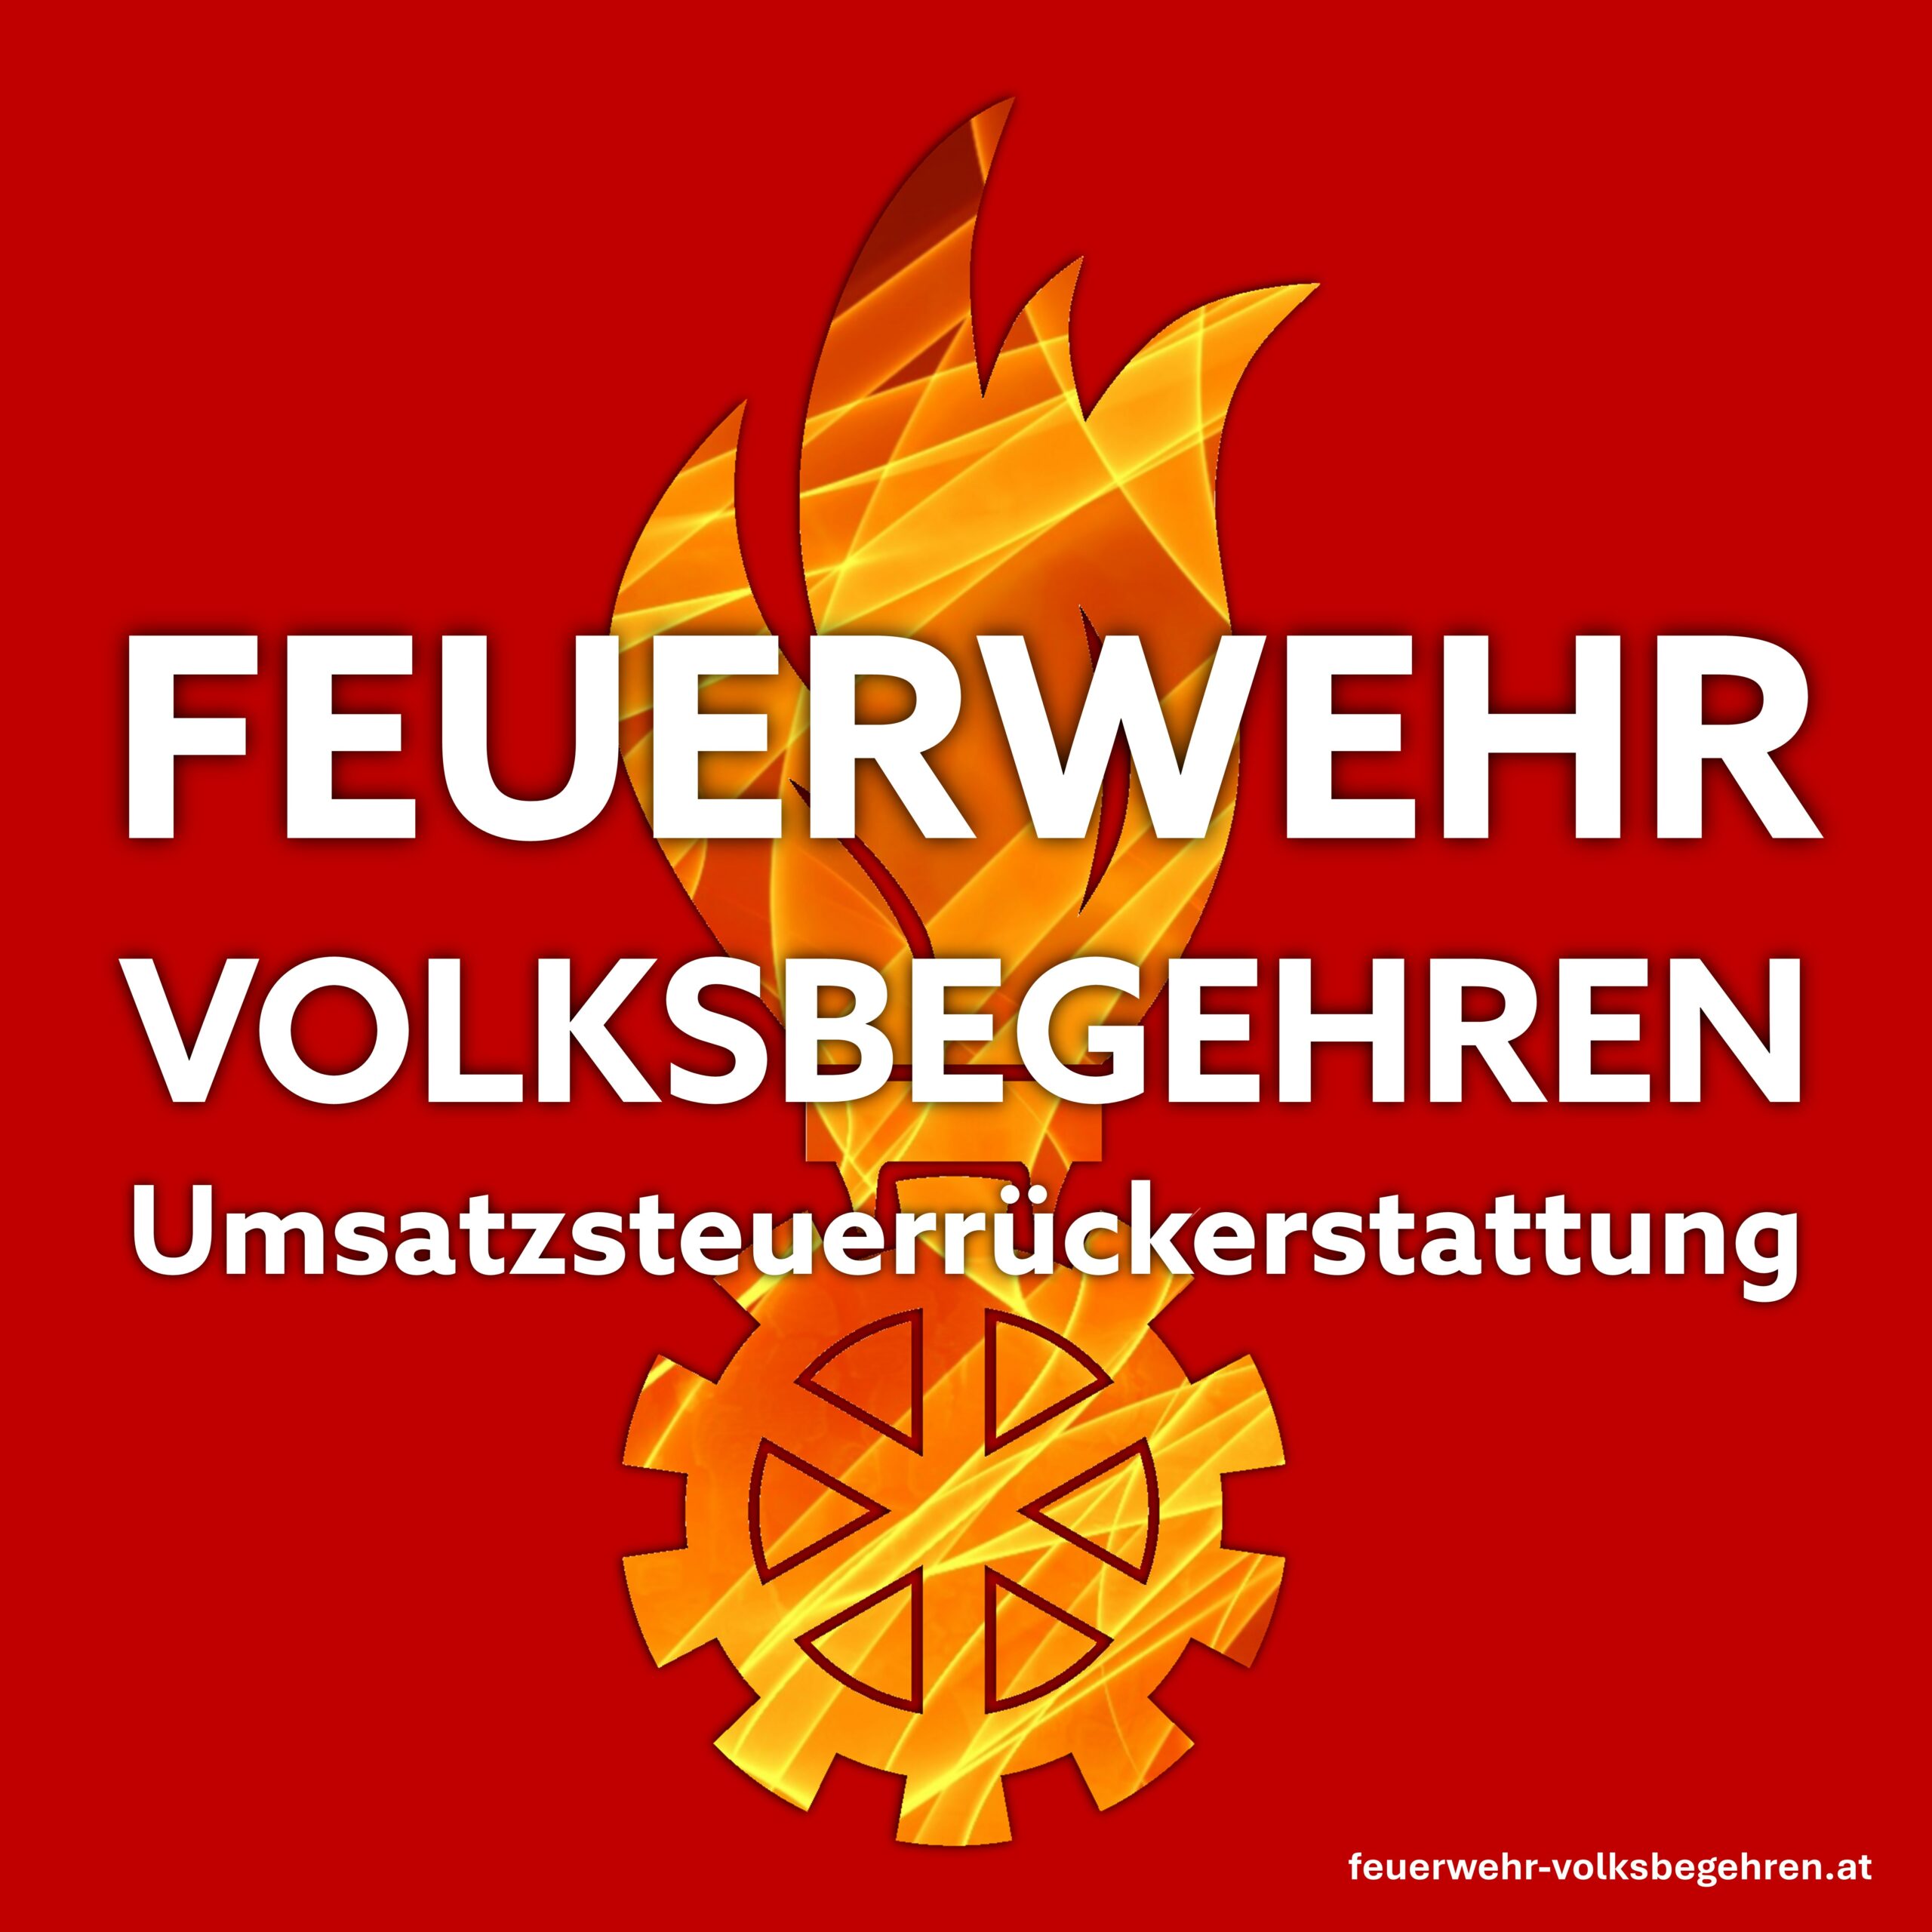 Feuerwehr Volksbegehren Logos 1 1 scaled